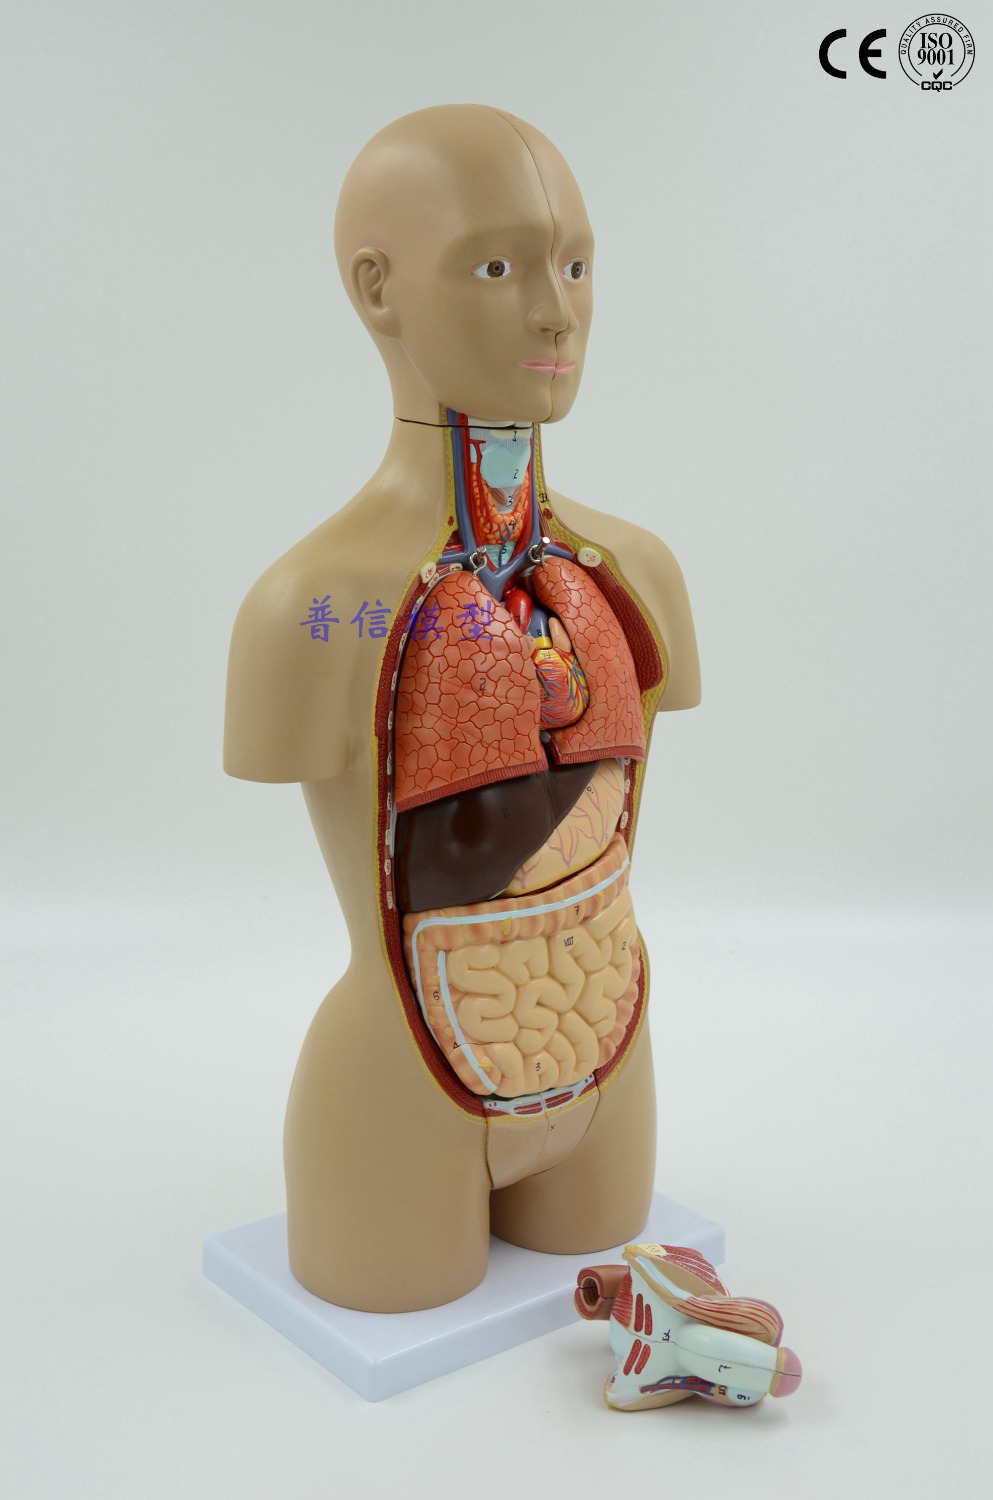 Bisex human organ photo